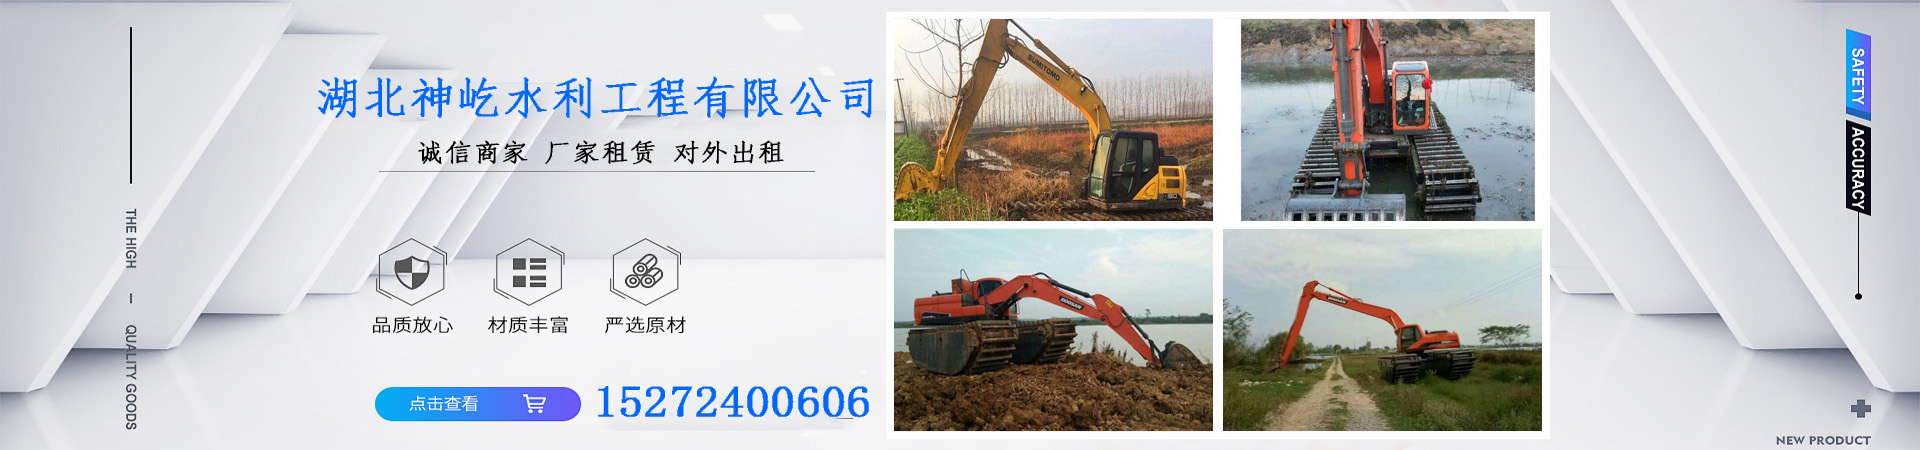 租赁水陆挖掘机、扬州本地租赁水陆挖掘机、扬州、扬州租赁水陆挖掘机